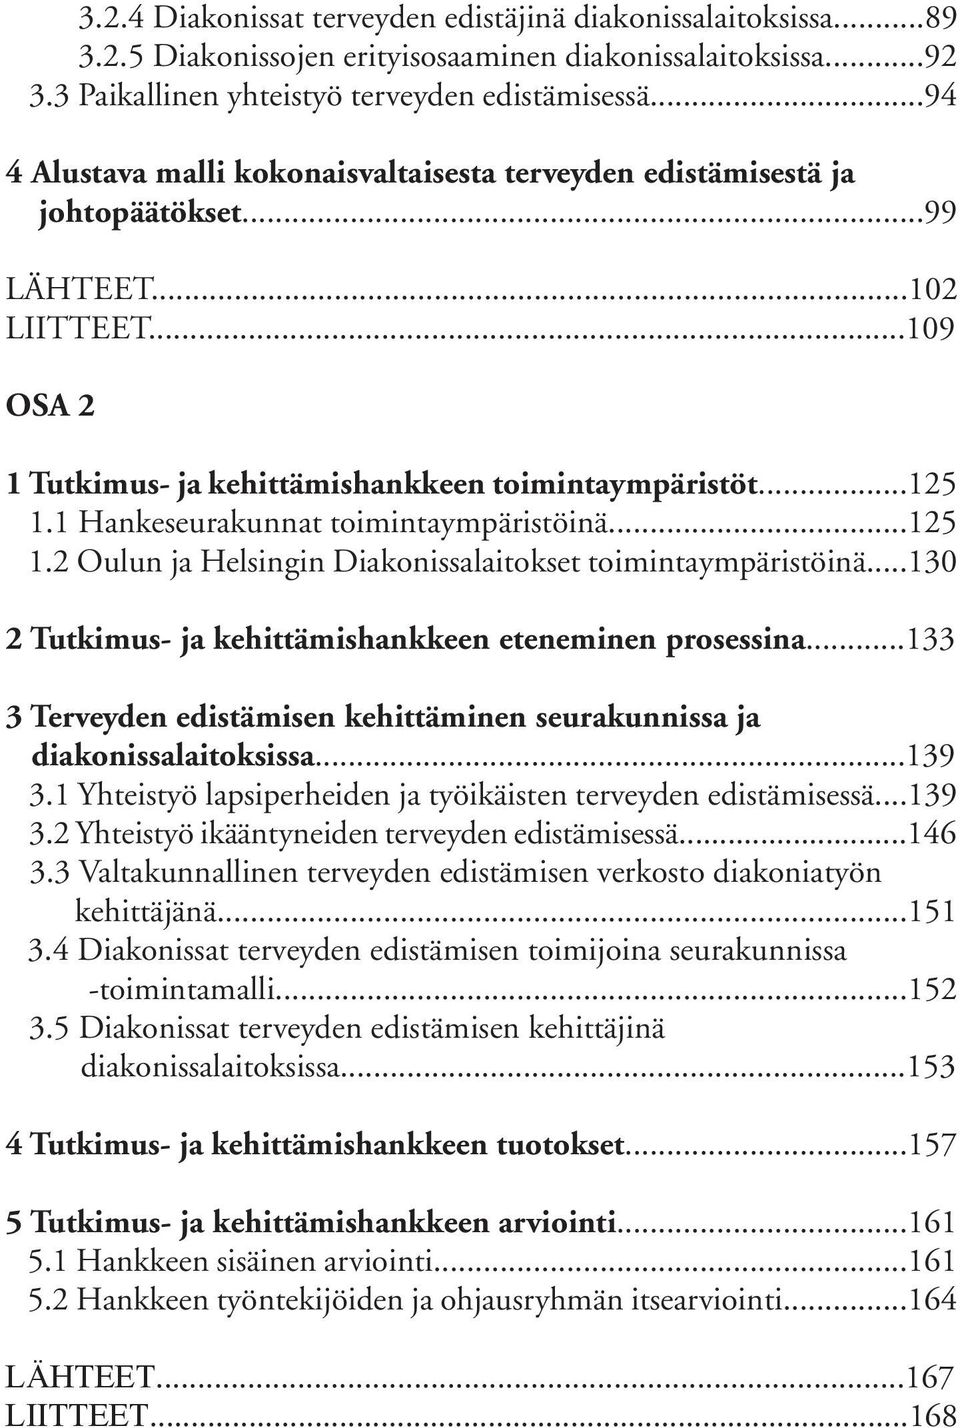 1 Hankeseurakunnat toimintaympäristöinä...125 1.2 Oulun ja Helsingin Diakonissalaitokset toimintaympäristöinä...130 2 Tutkimus- ja kehittämishankkeen eteneminen prosessina.